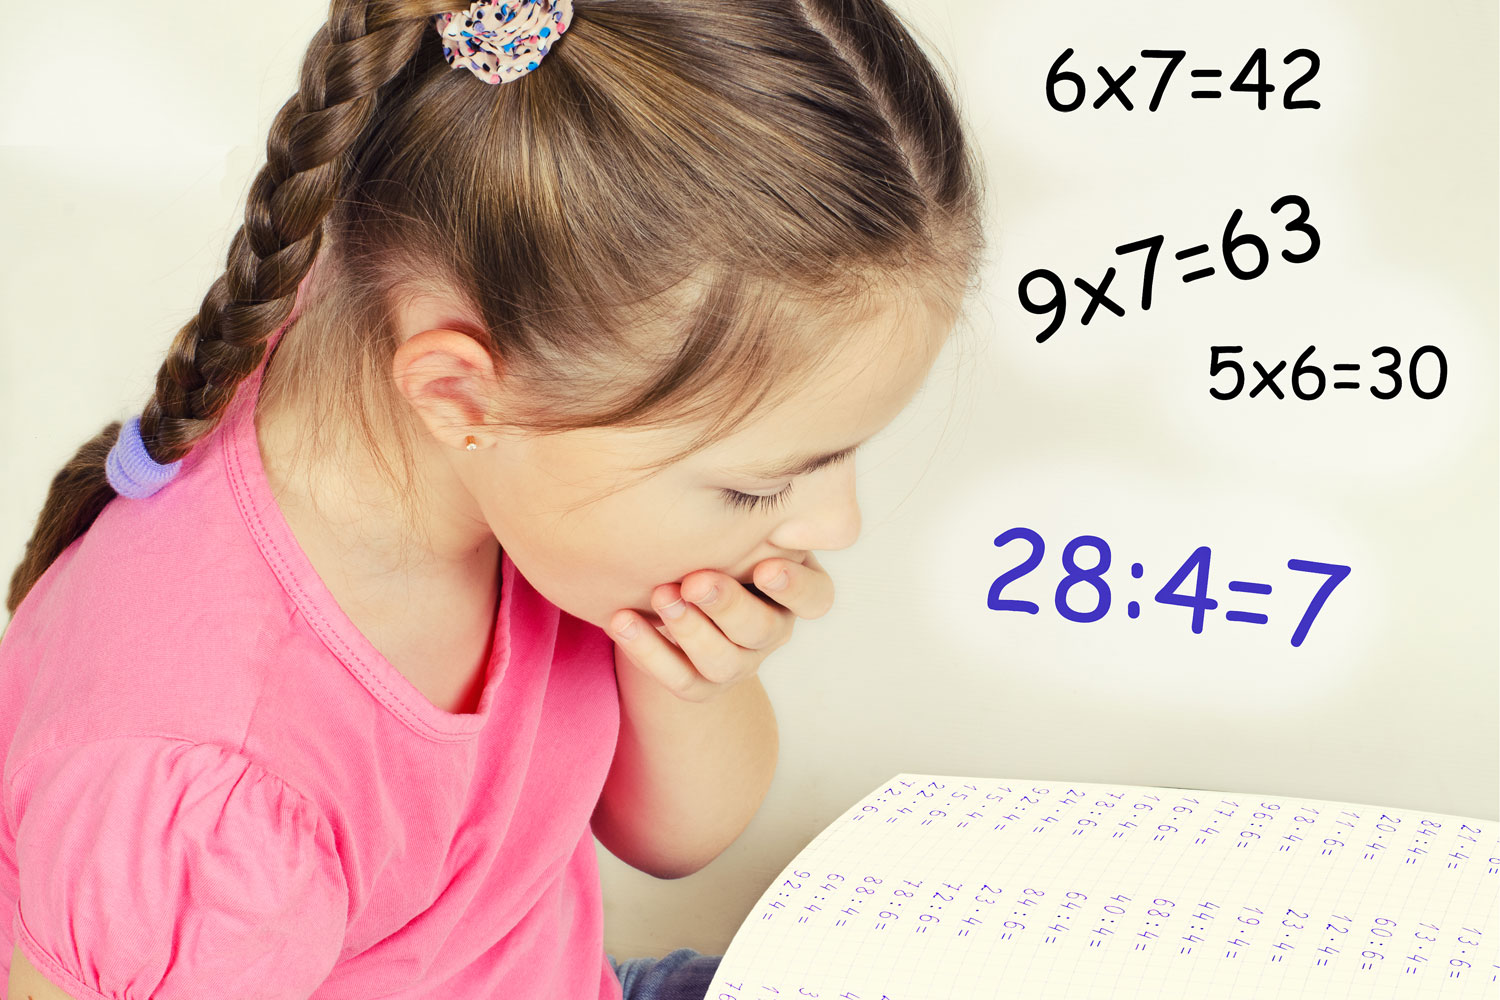 tabuada - Pesquisa Google  Imparare le tabelline, Matematica per bambini,  Tabelline